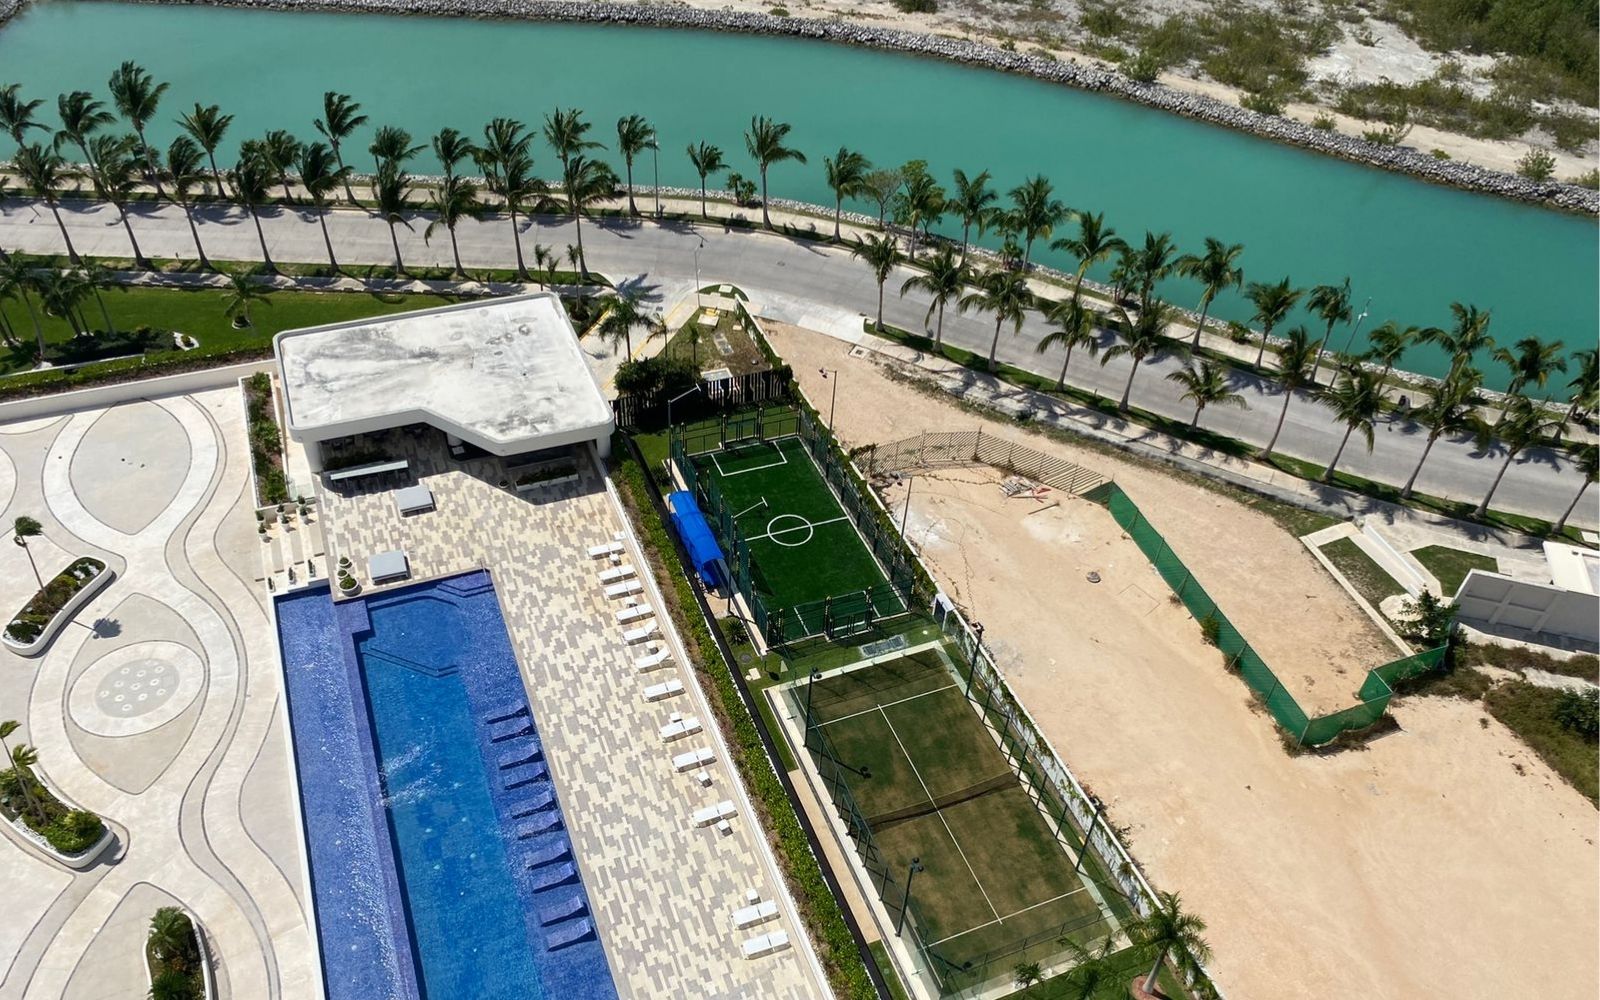 Condominio con Club de playa frente al mar, Alberca, gym y Salón de eventos, en  Costa mujeres,  Cancun.